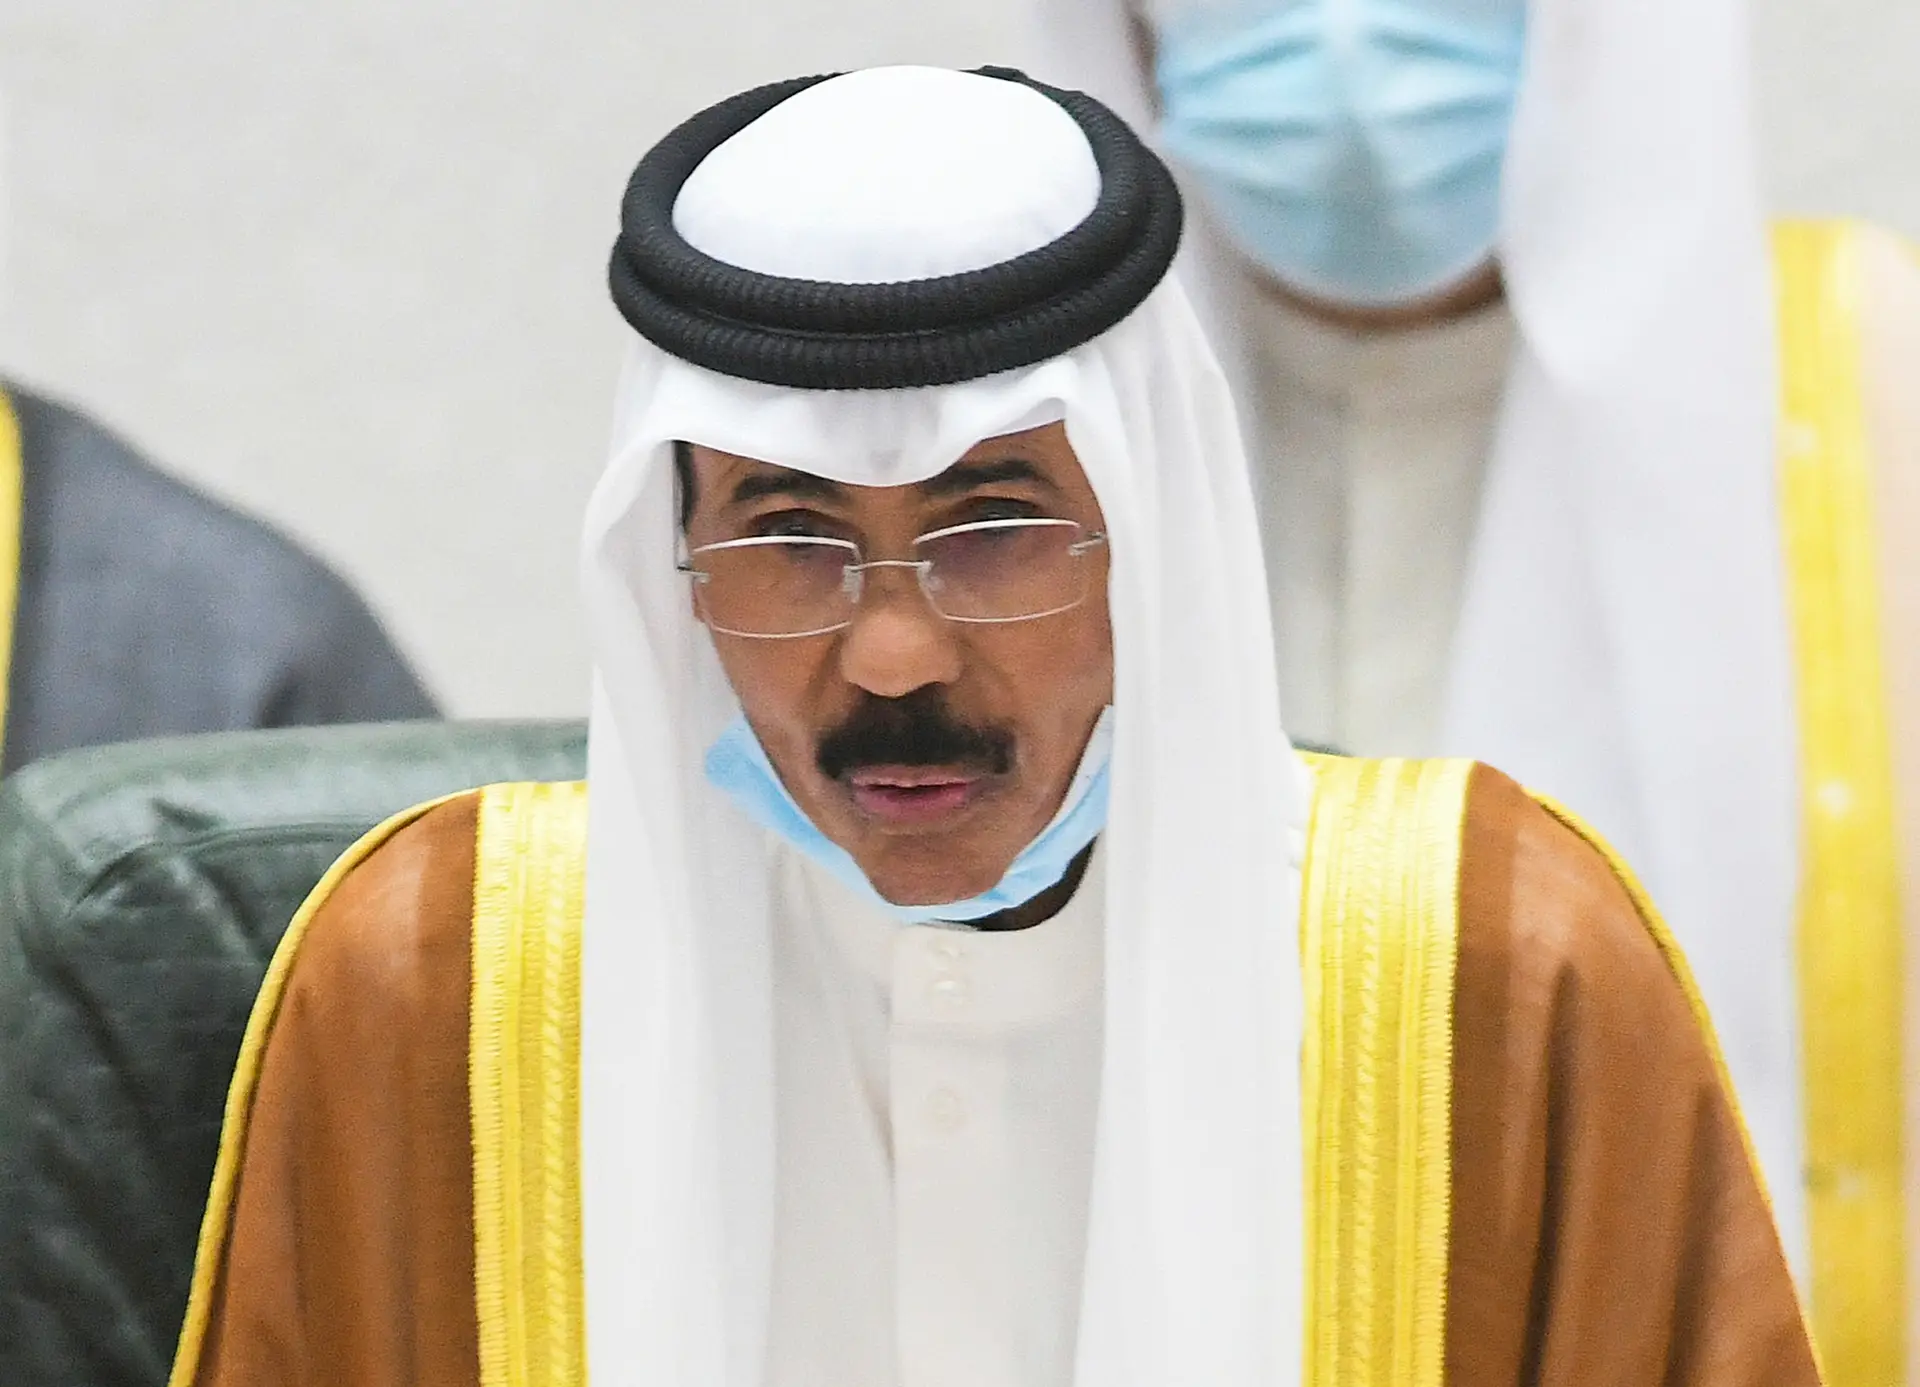 Morreu Emir do Kuwait, xeque Nawaf Al Ahmad Al Sabah - Renascença